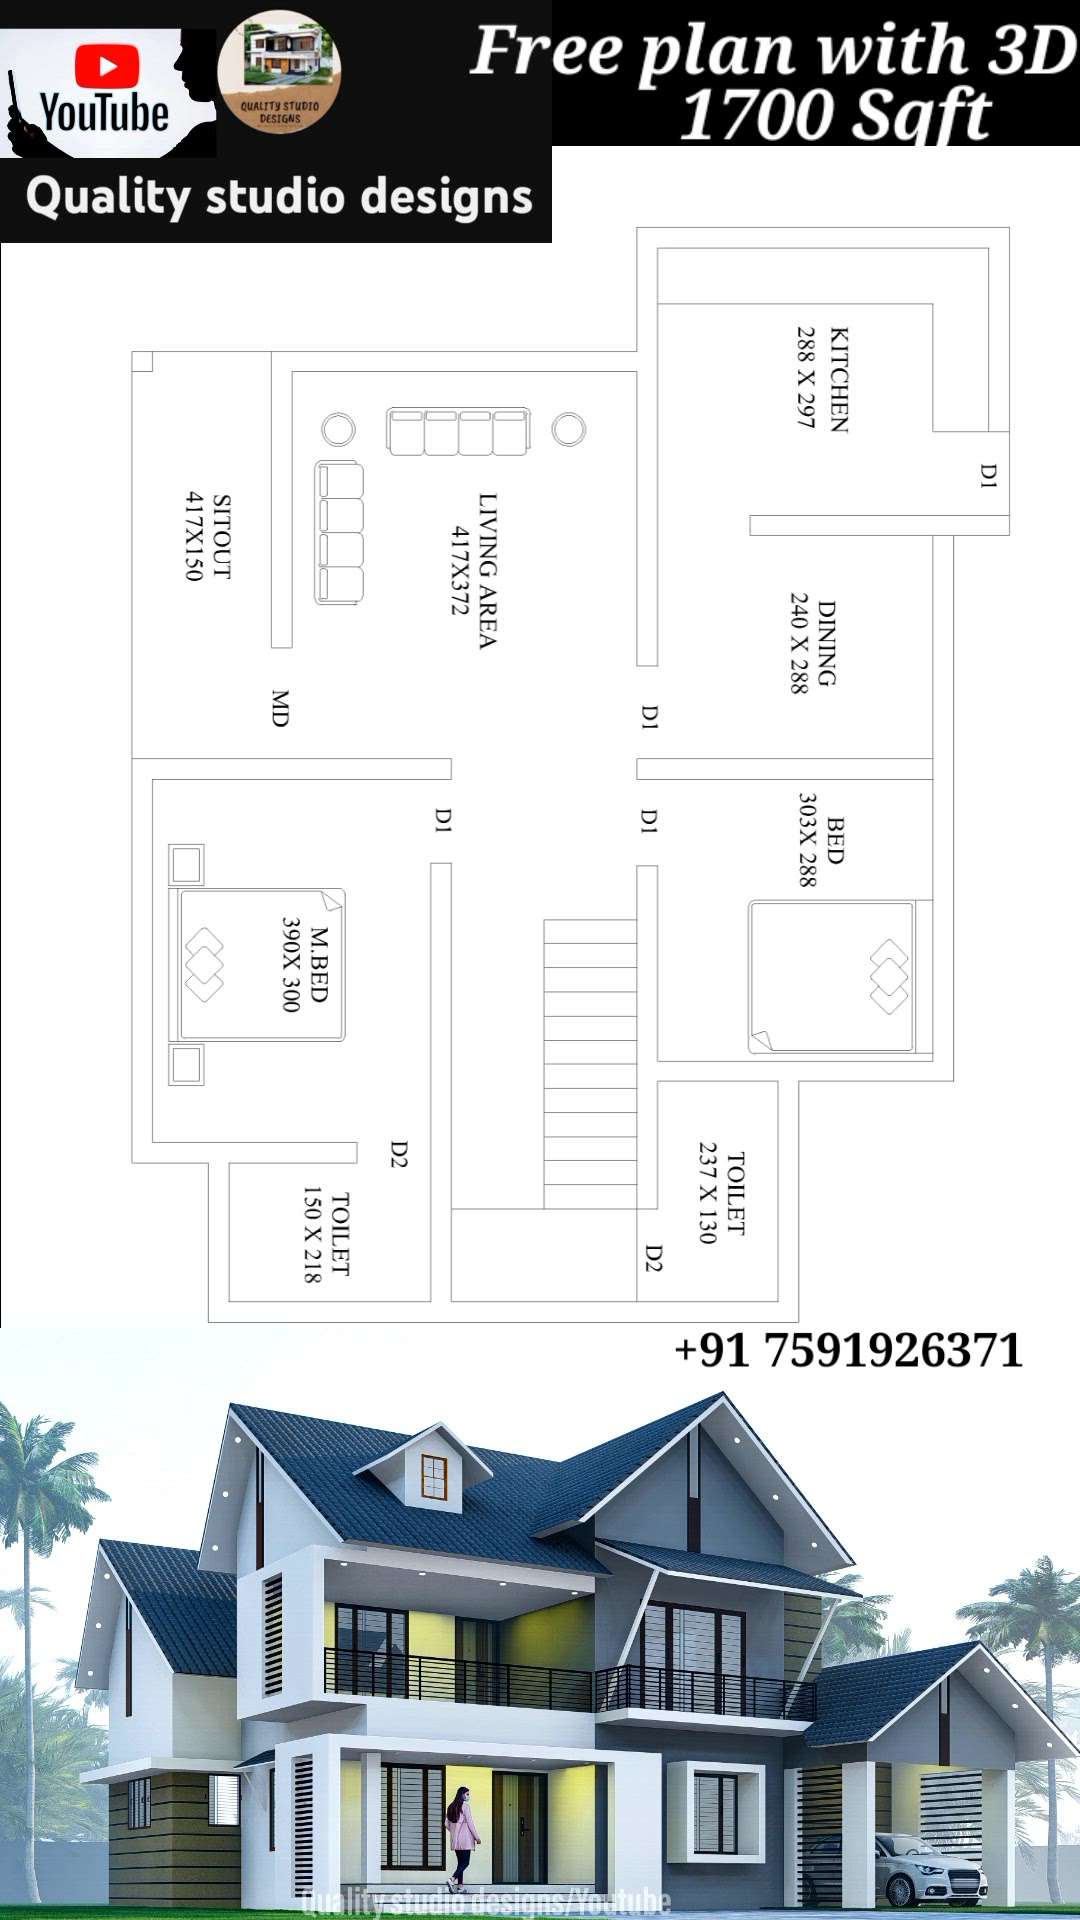 30 ലക്ഷത്തിന് പണിയാൻ കഴിയുന്ന പ്രൊജക്ട് cost -28 lakh 4 bed room project - +91 7591926371 #ElevationHome #HouseDesigns #ContemporaryHouse #InteriorDesigner #exterior_Work #turnkeyhomes